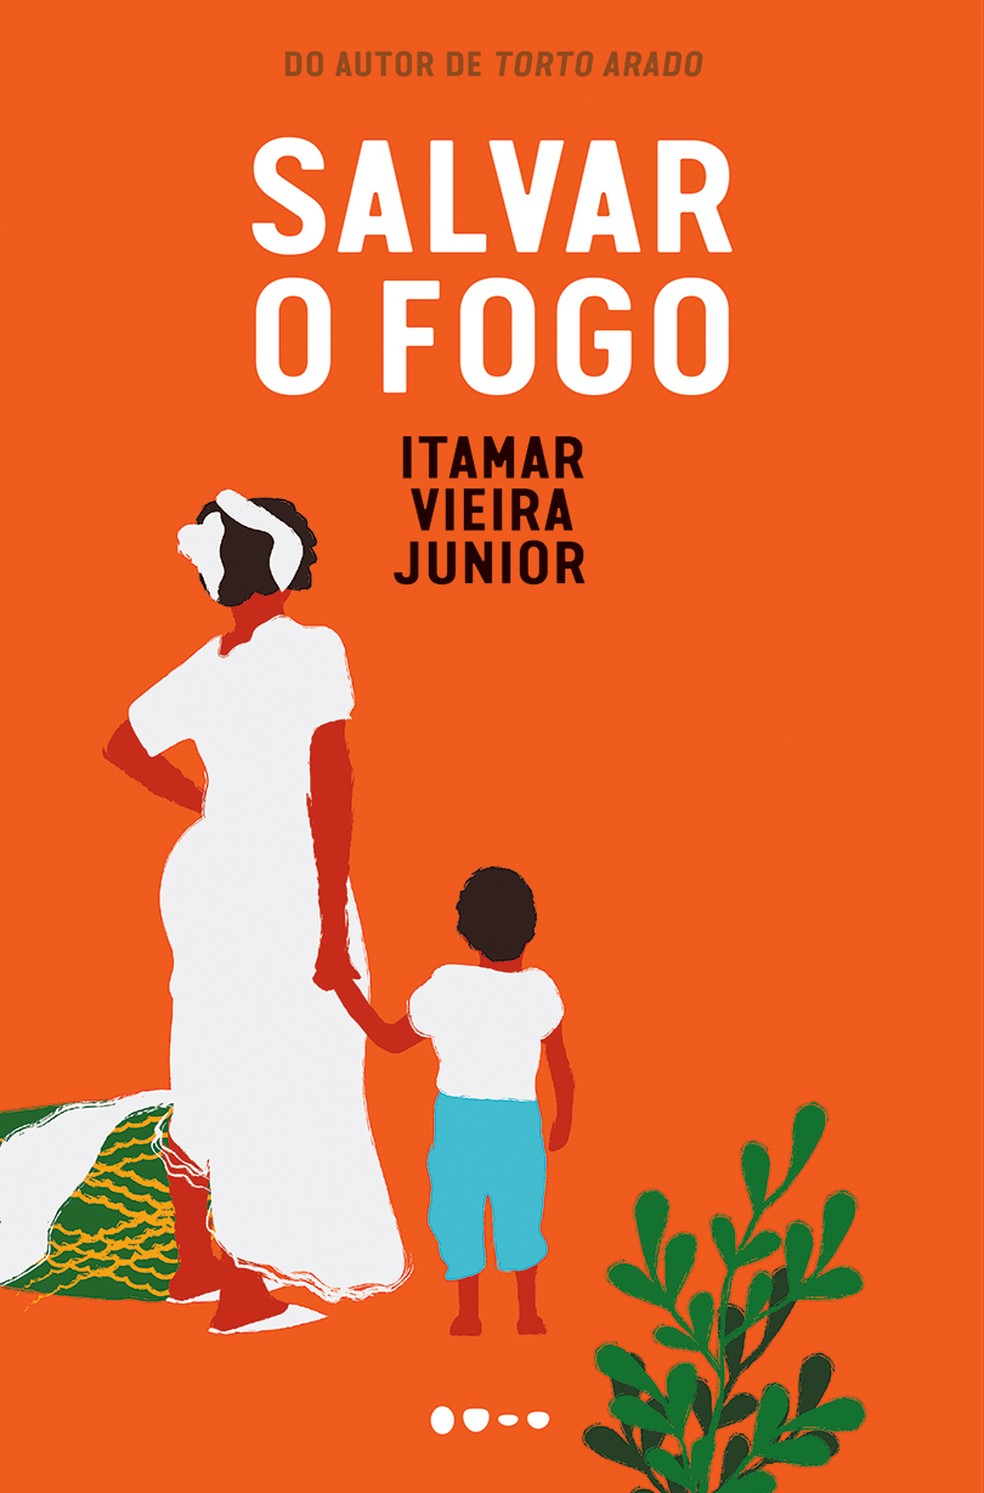 Capa de "Salvar o fogo", novo romance de Itamar Vieira Junior — Foto: Reprodução